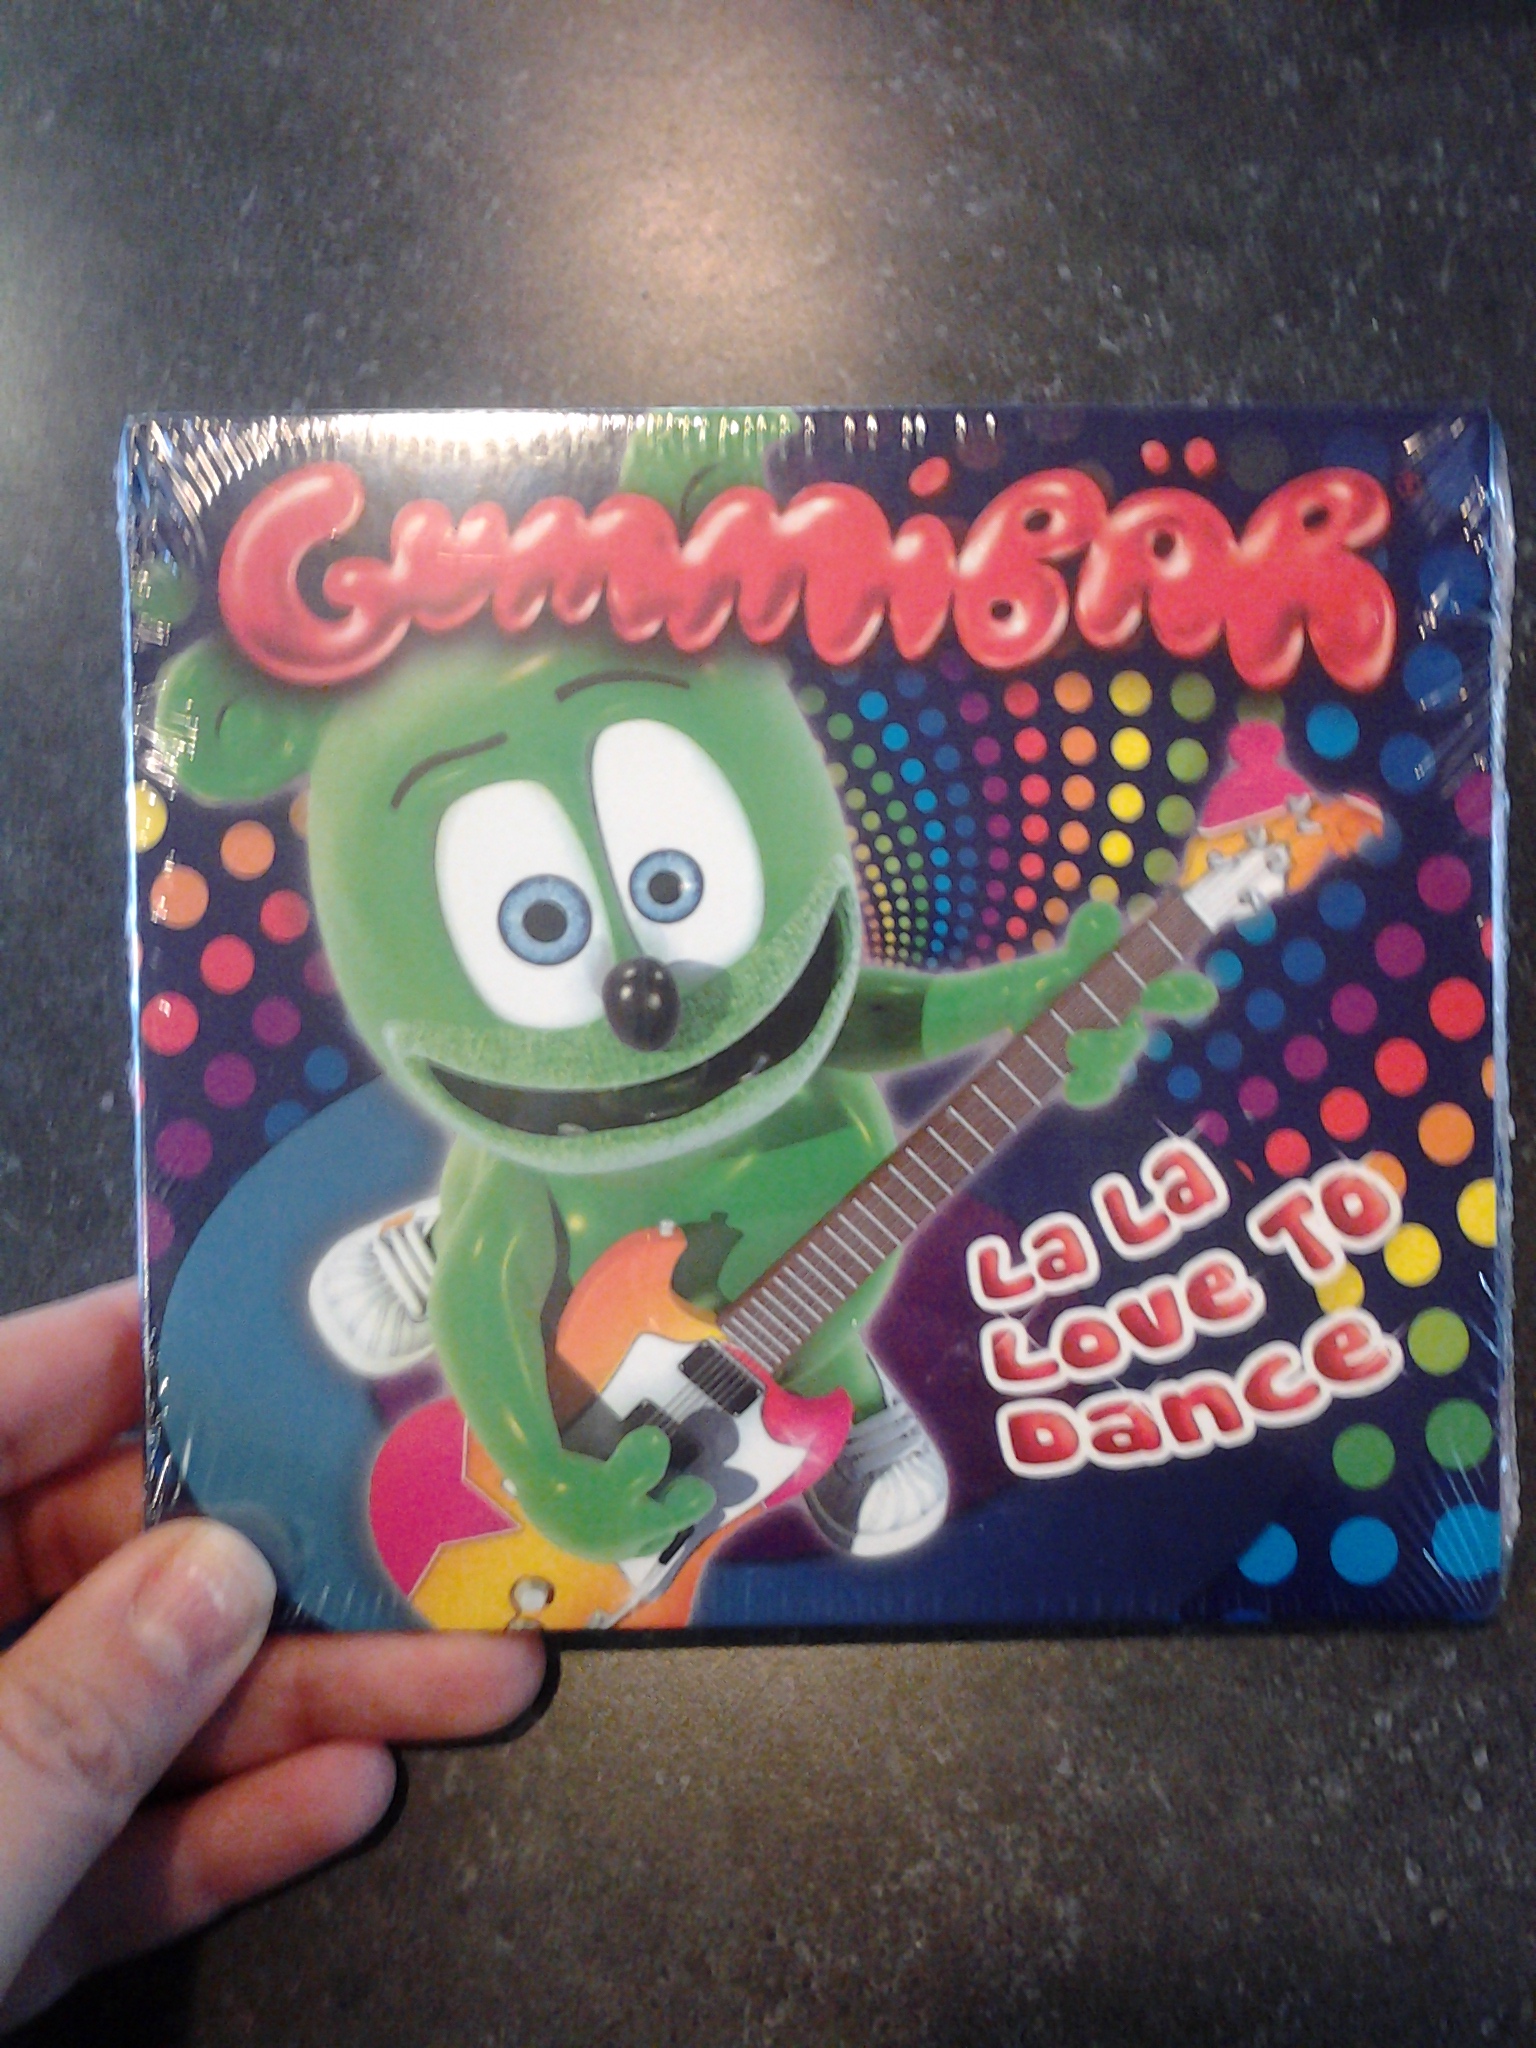 La La La I Love You - Gummibär - The Gummy Bear 